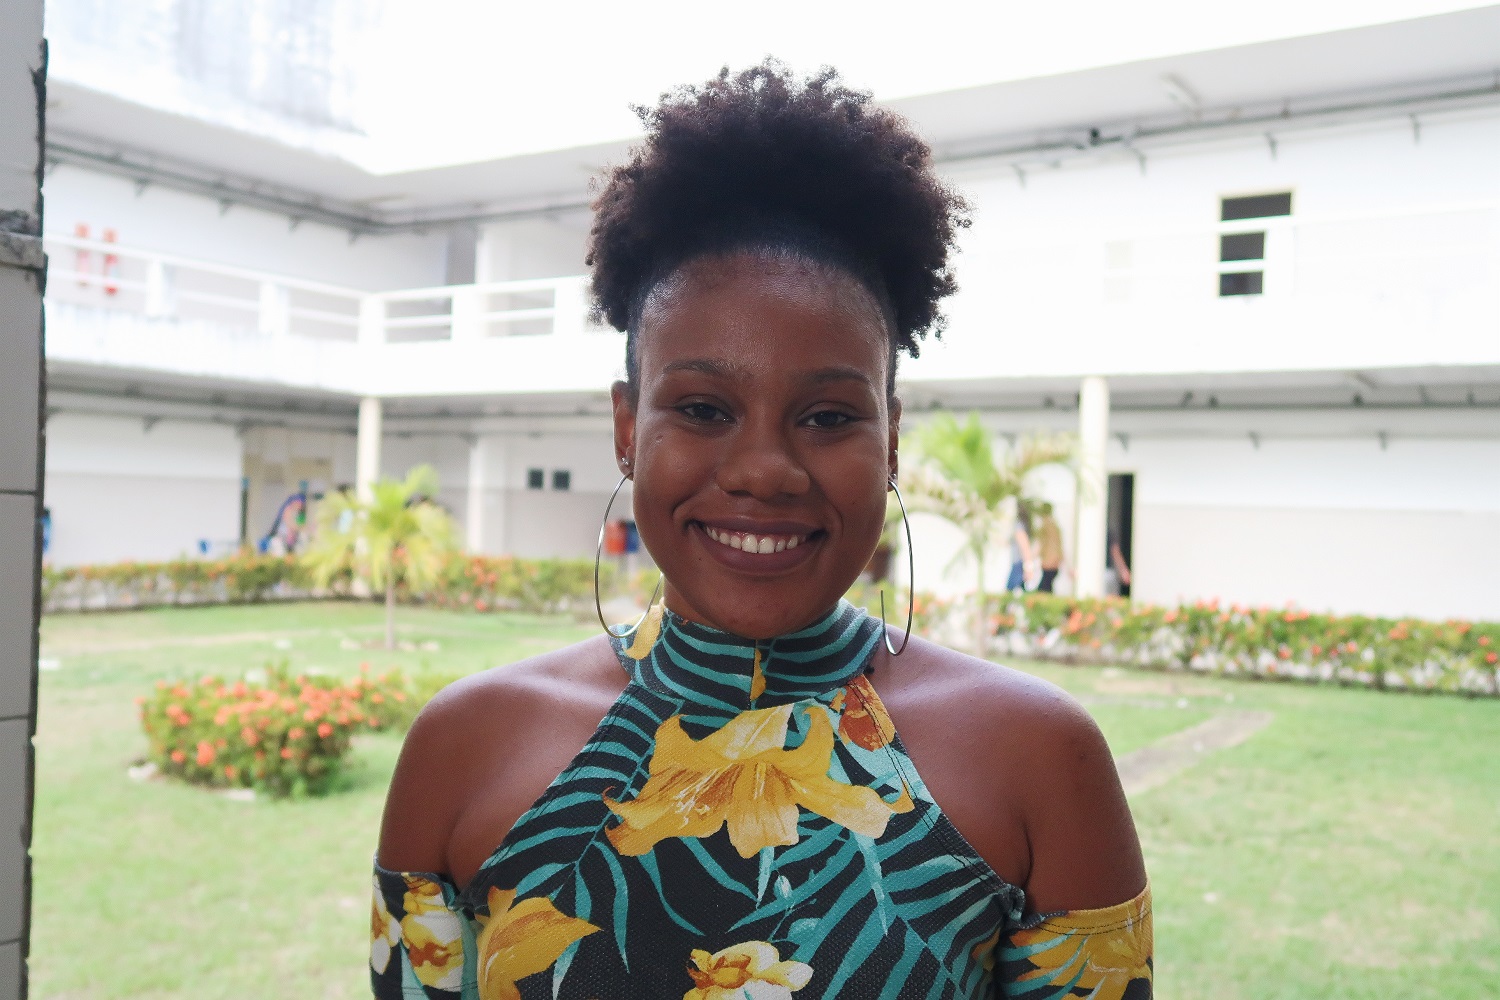 "Com a proposta da oficina, resolvi participar e vi que foi um ponto motivador para que eu siga aprendendo mais sobre essa realidade”, disse a estudante Mayara Augusta.